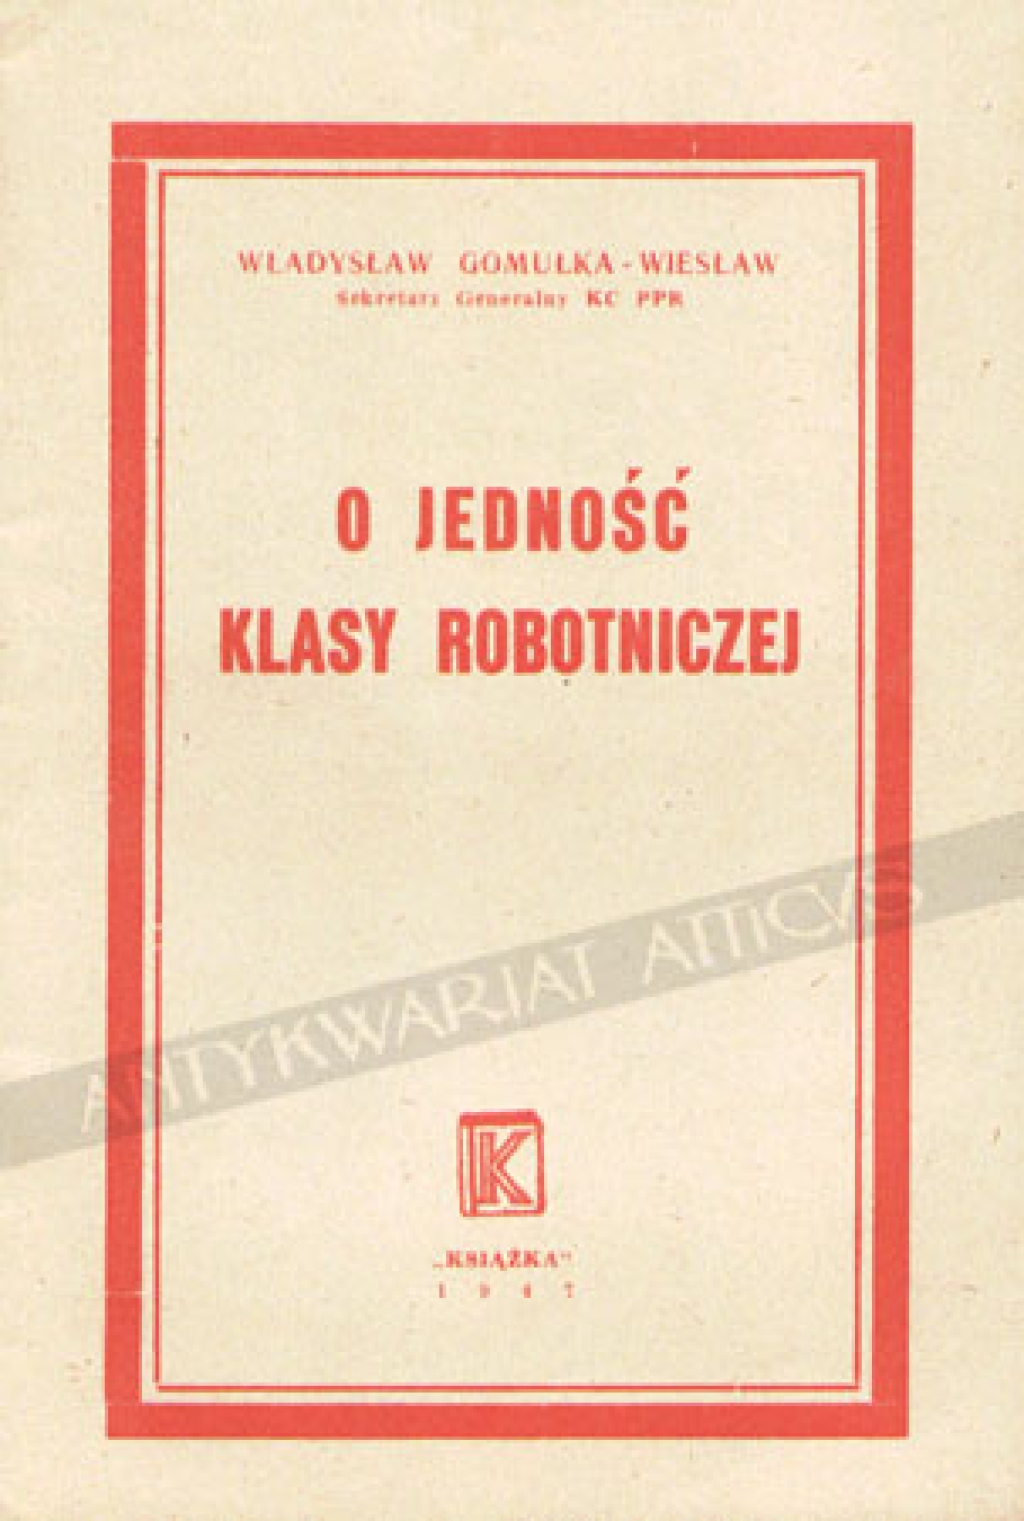 O jedność klasy robotniczej. Przemówienie na Akademii Pierwszomajowej w Warszawie w dniu 30.4.1947 r.